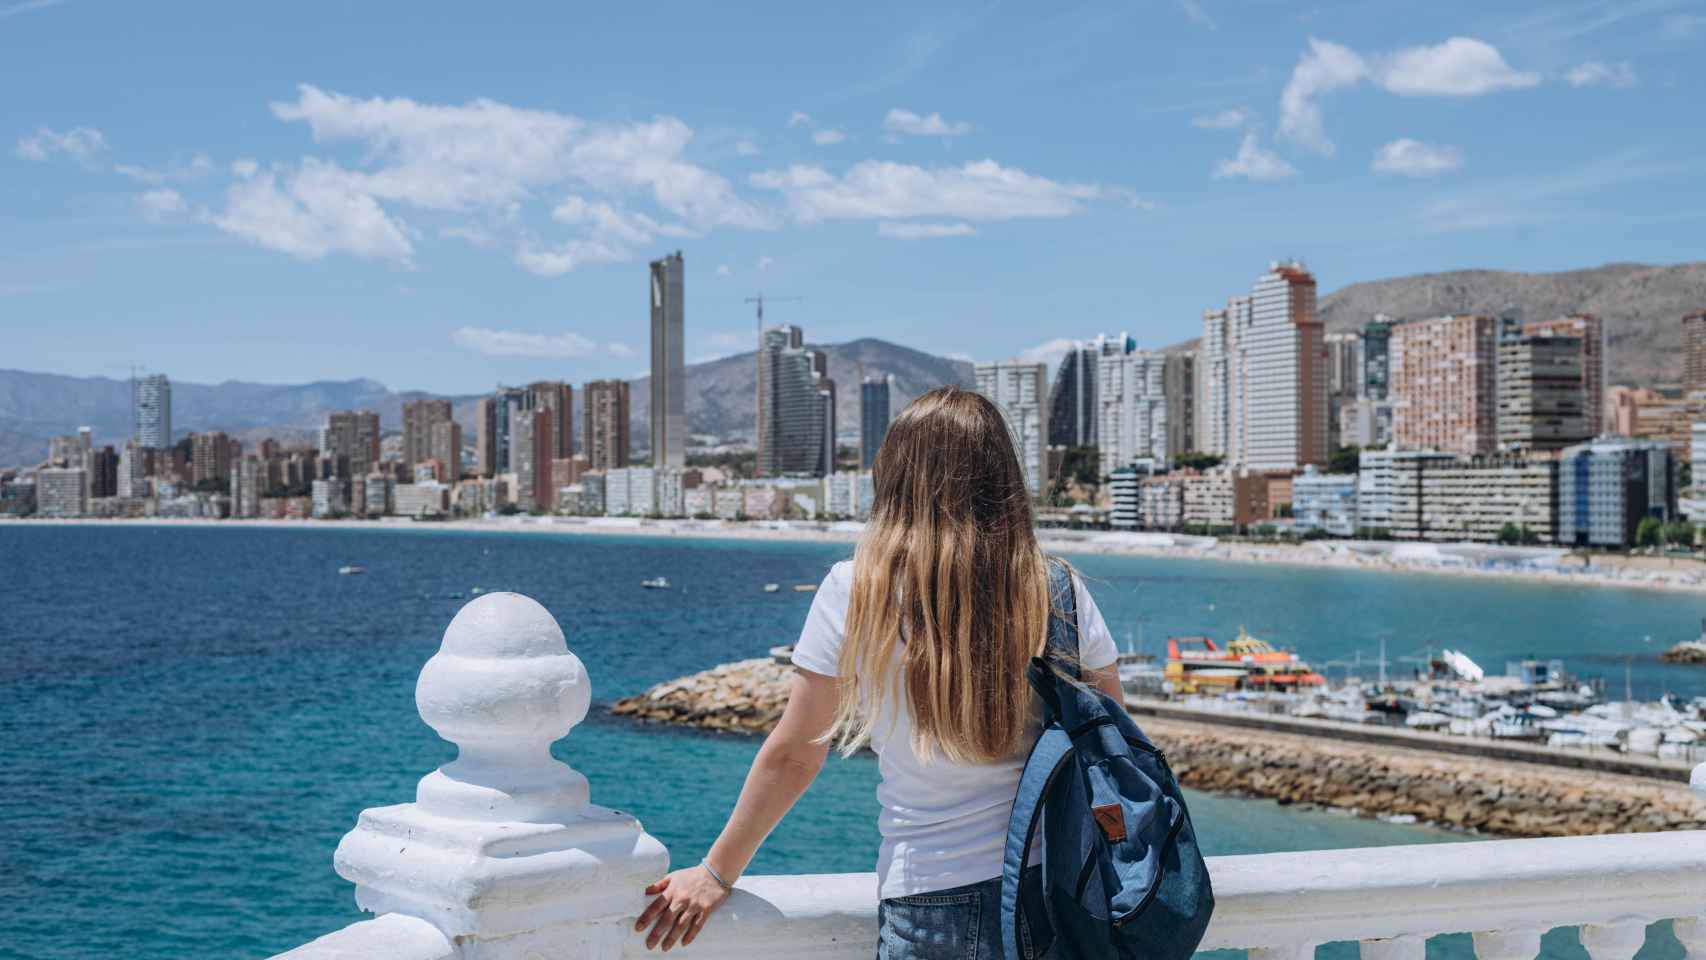 Una joven contempla el mar desde El Castell –también conocido como el Balcón del Mediterráneo-, en una imagen de 'Shutterstock'.